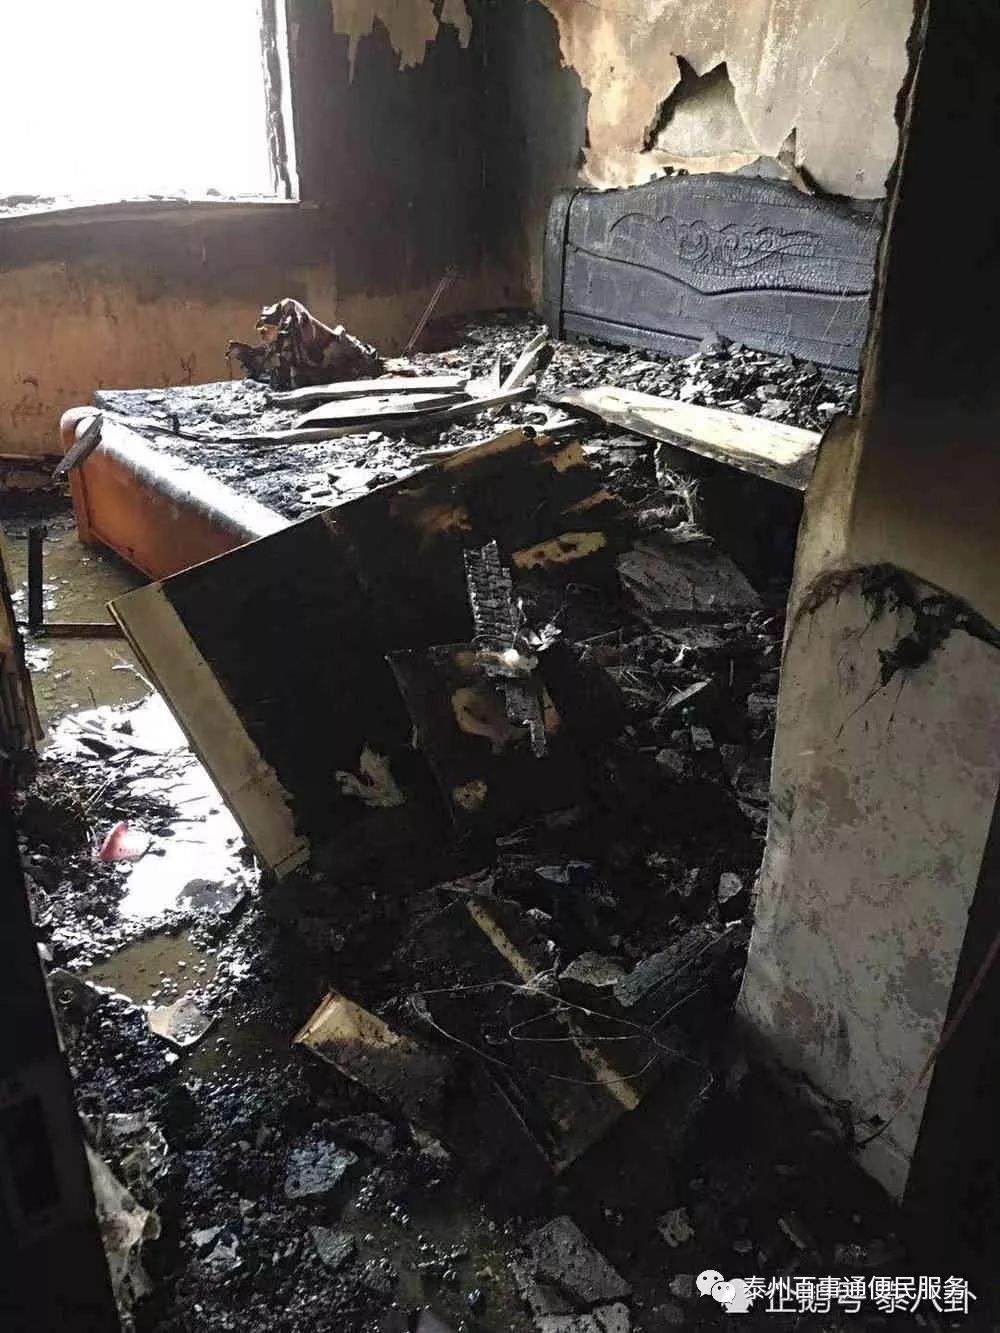 泰州某小区14楼突然起火,房间被烧成灰烬